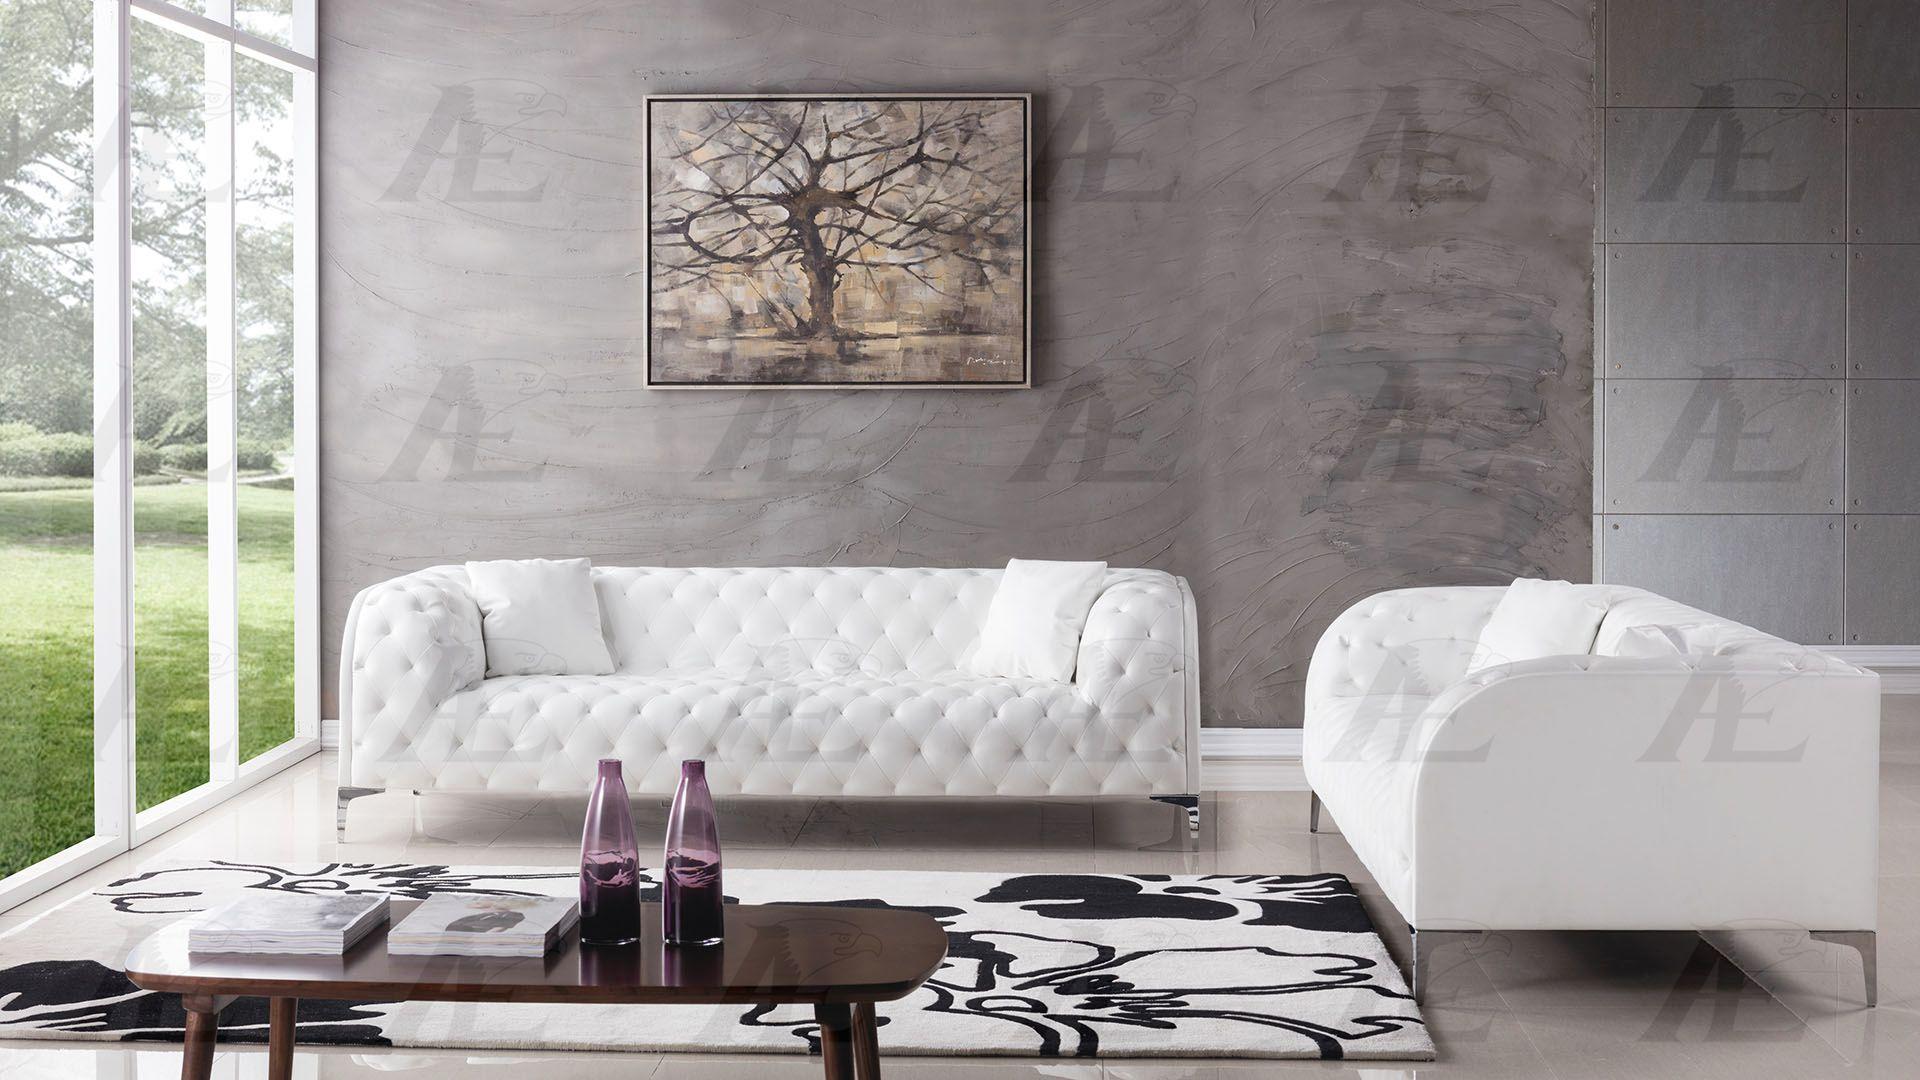 

    
American Eagle Furniture AE-D822-W Sofa White AE-D822-W-SF
